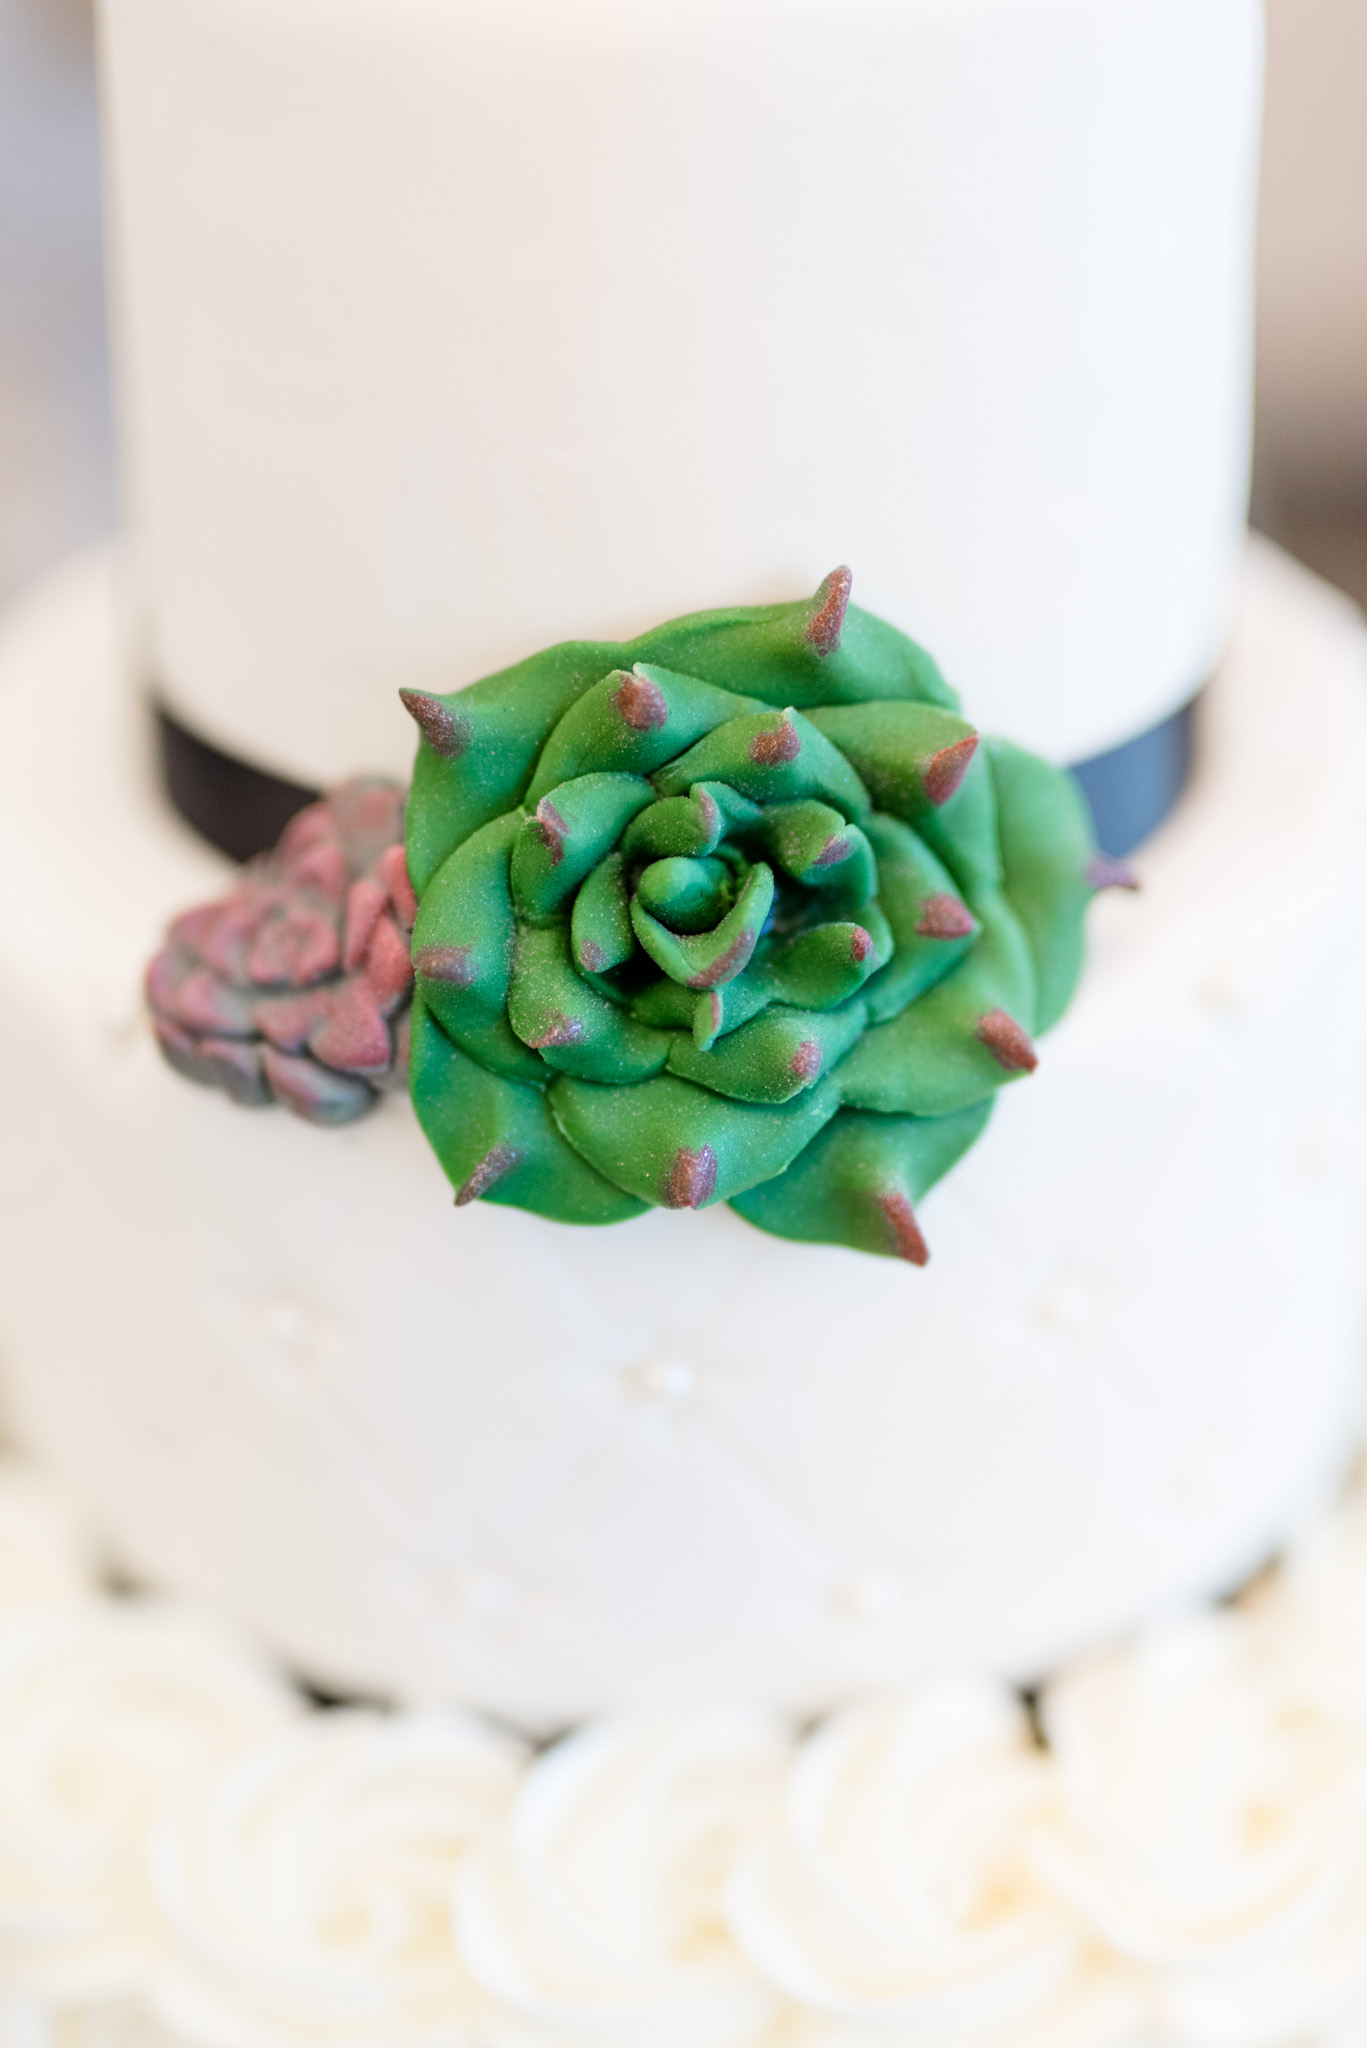 Succulent cake art